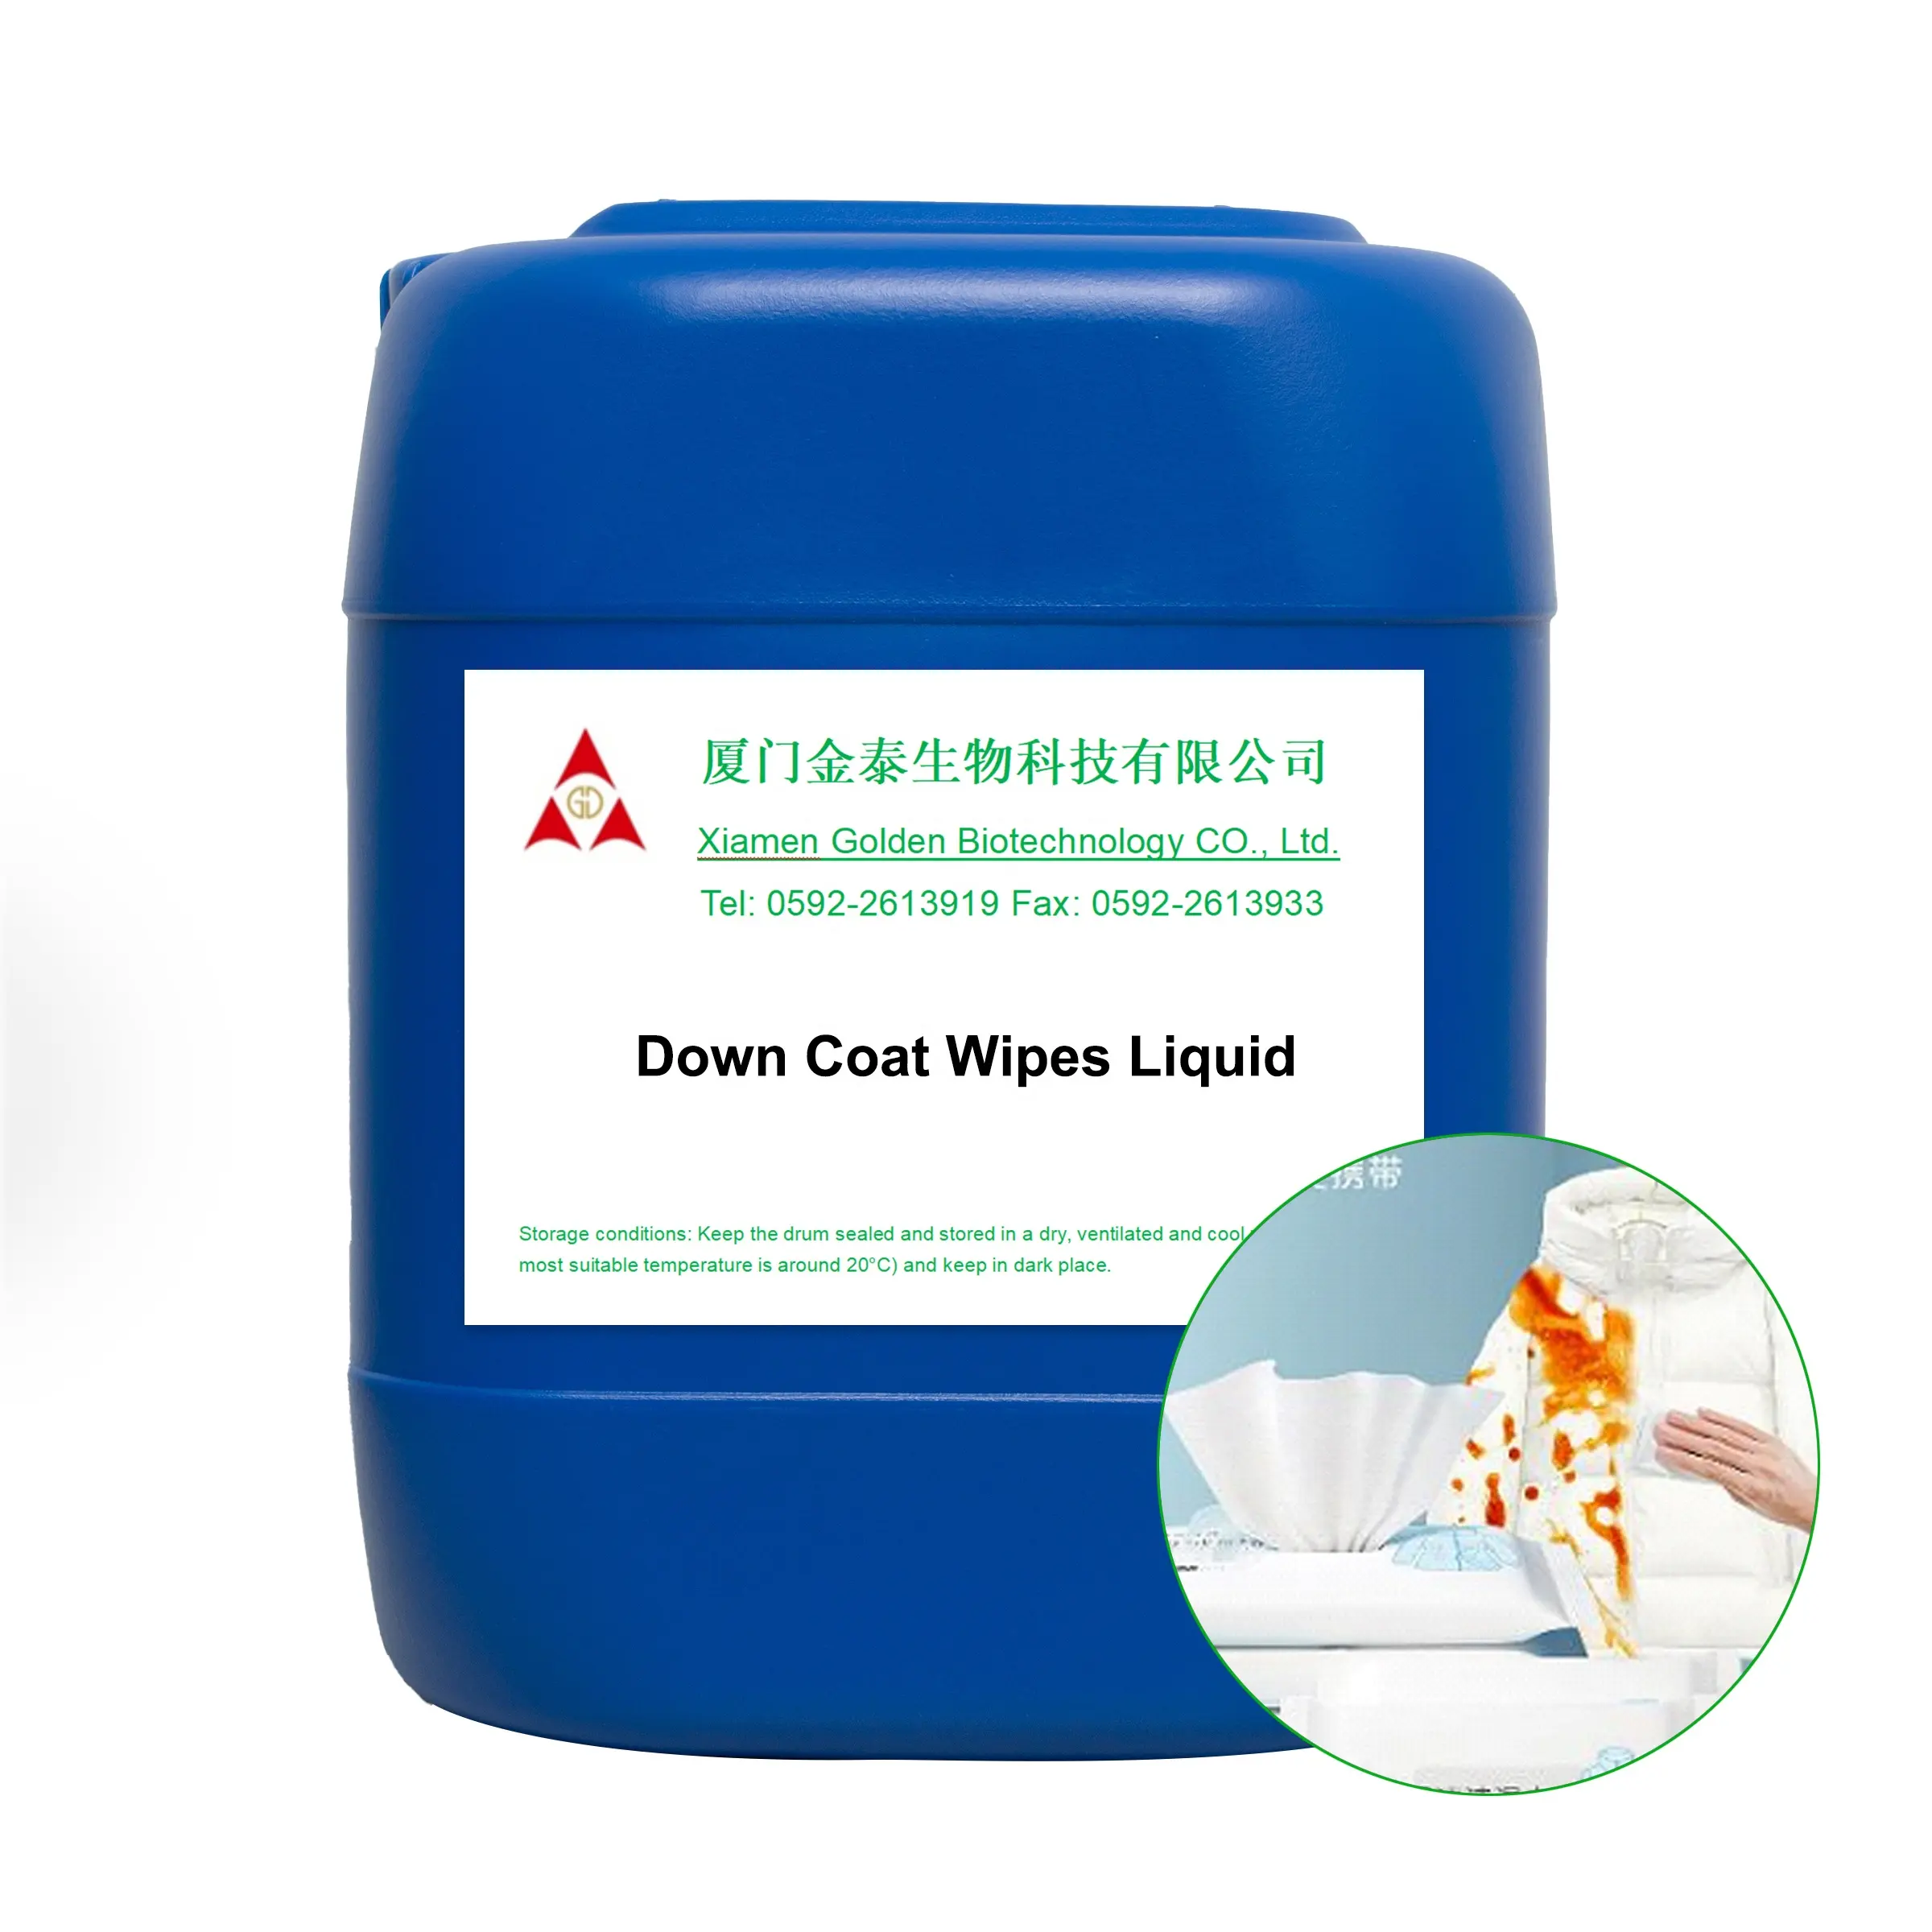 Kunden spezifische profession elle Konservierung mittel Formel Wet Wipes Liquid Hersteller für Daunen jacke Wet Wipes Making